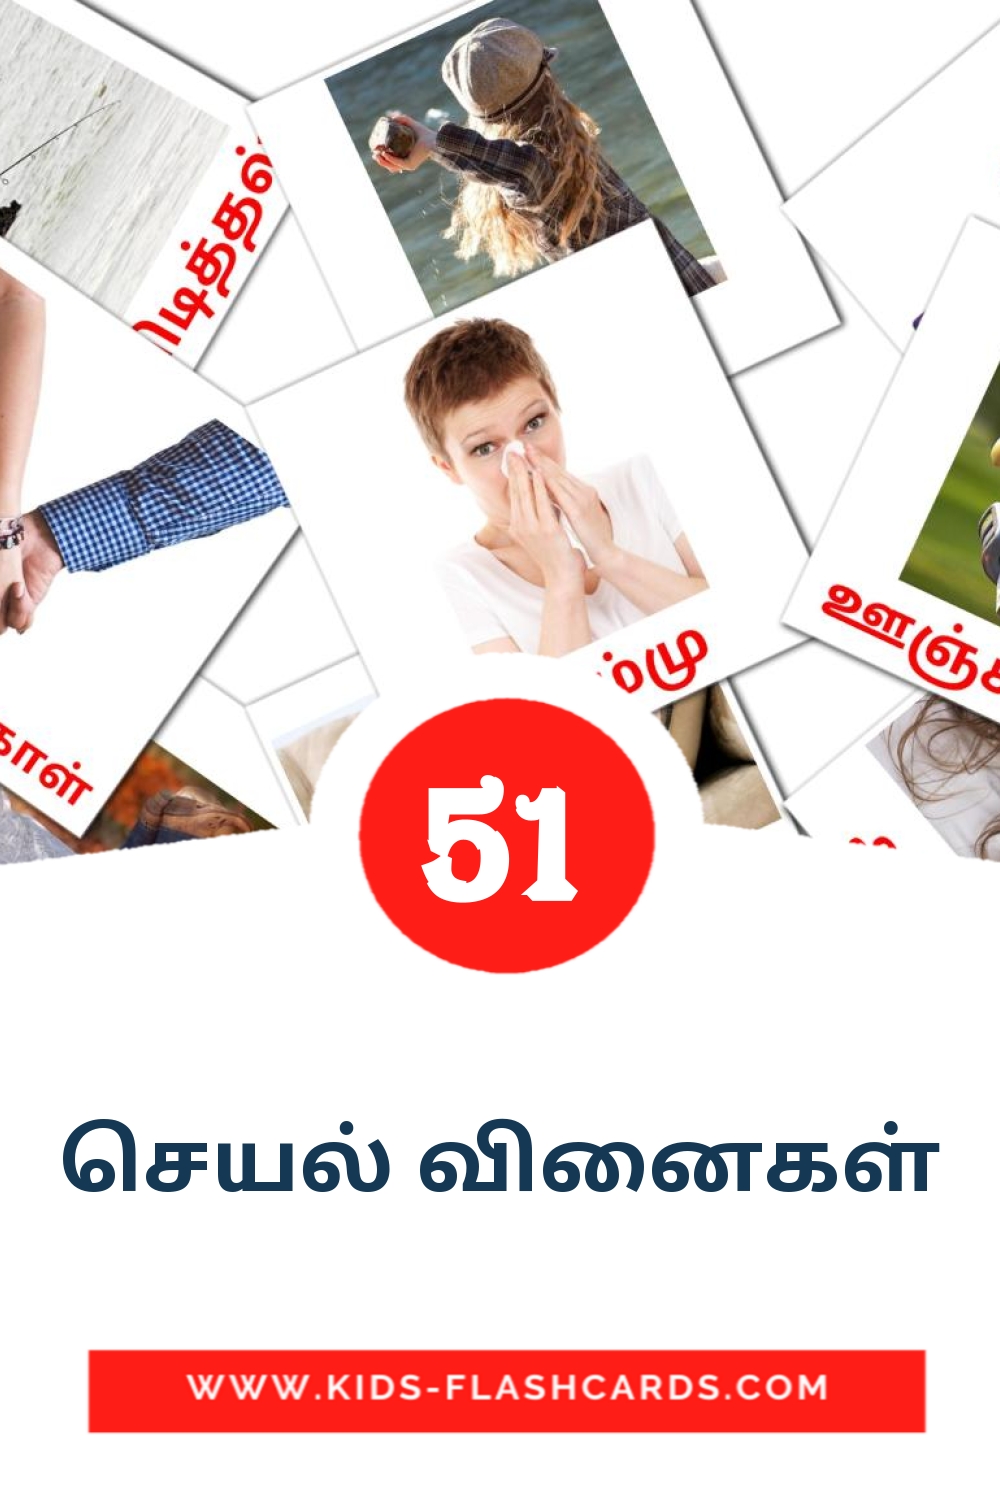 54 tarjetas didacticas de செயல் வினைகள் para el jardín de infancia en tamil